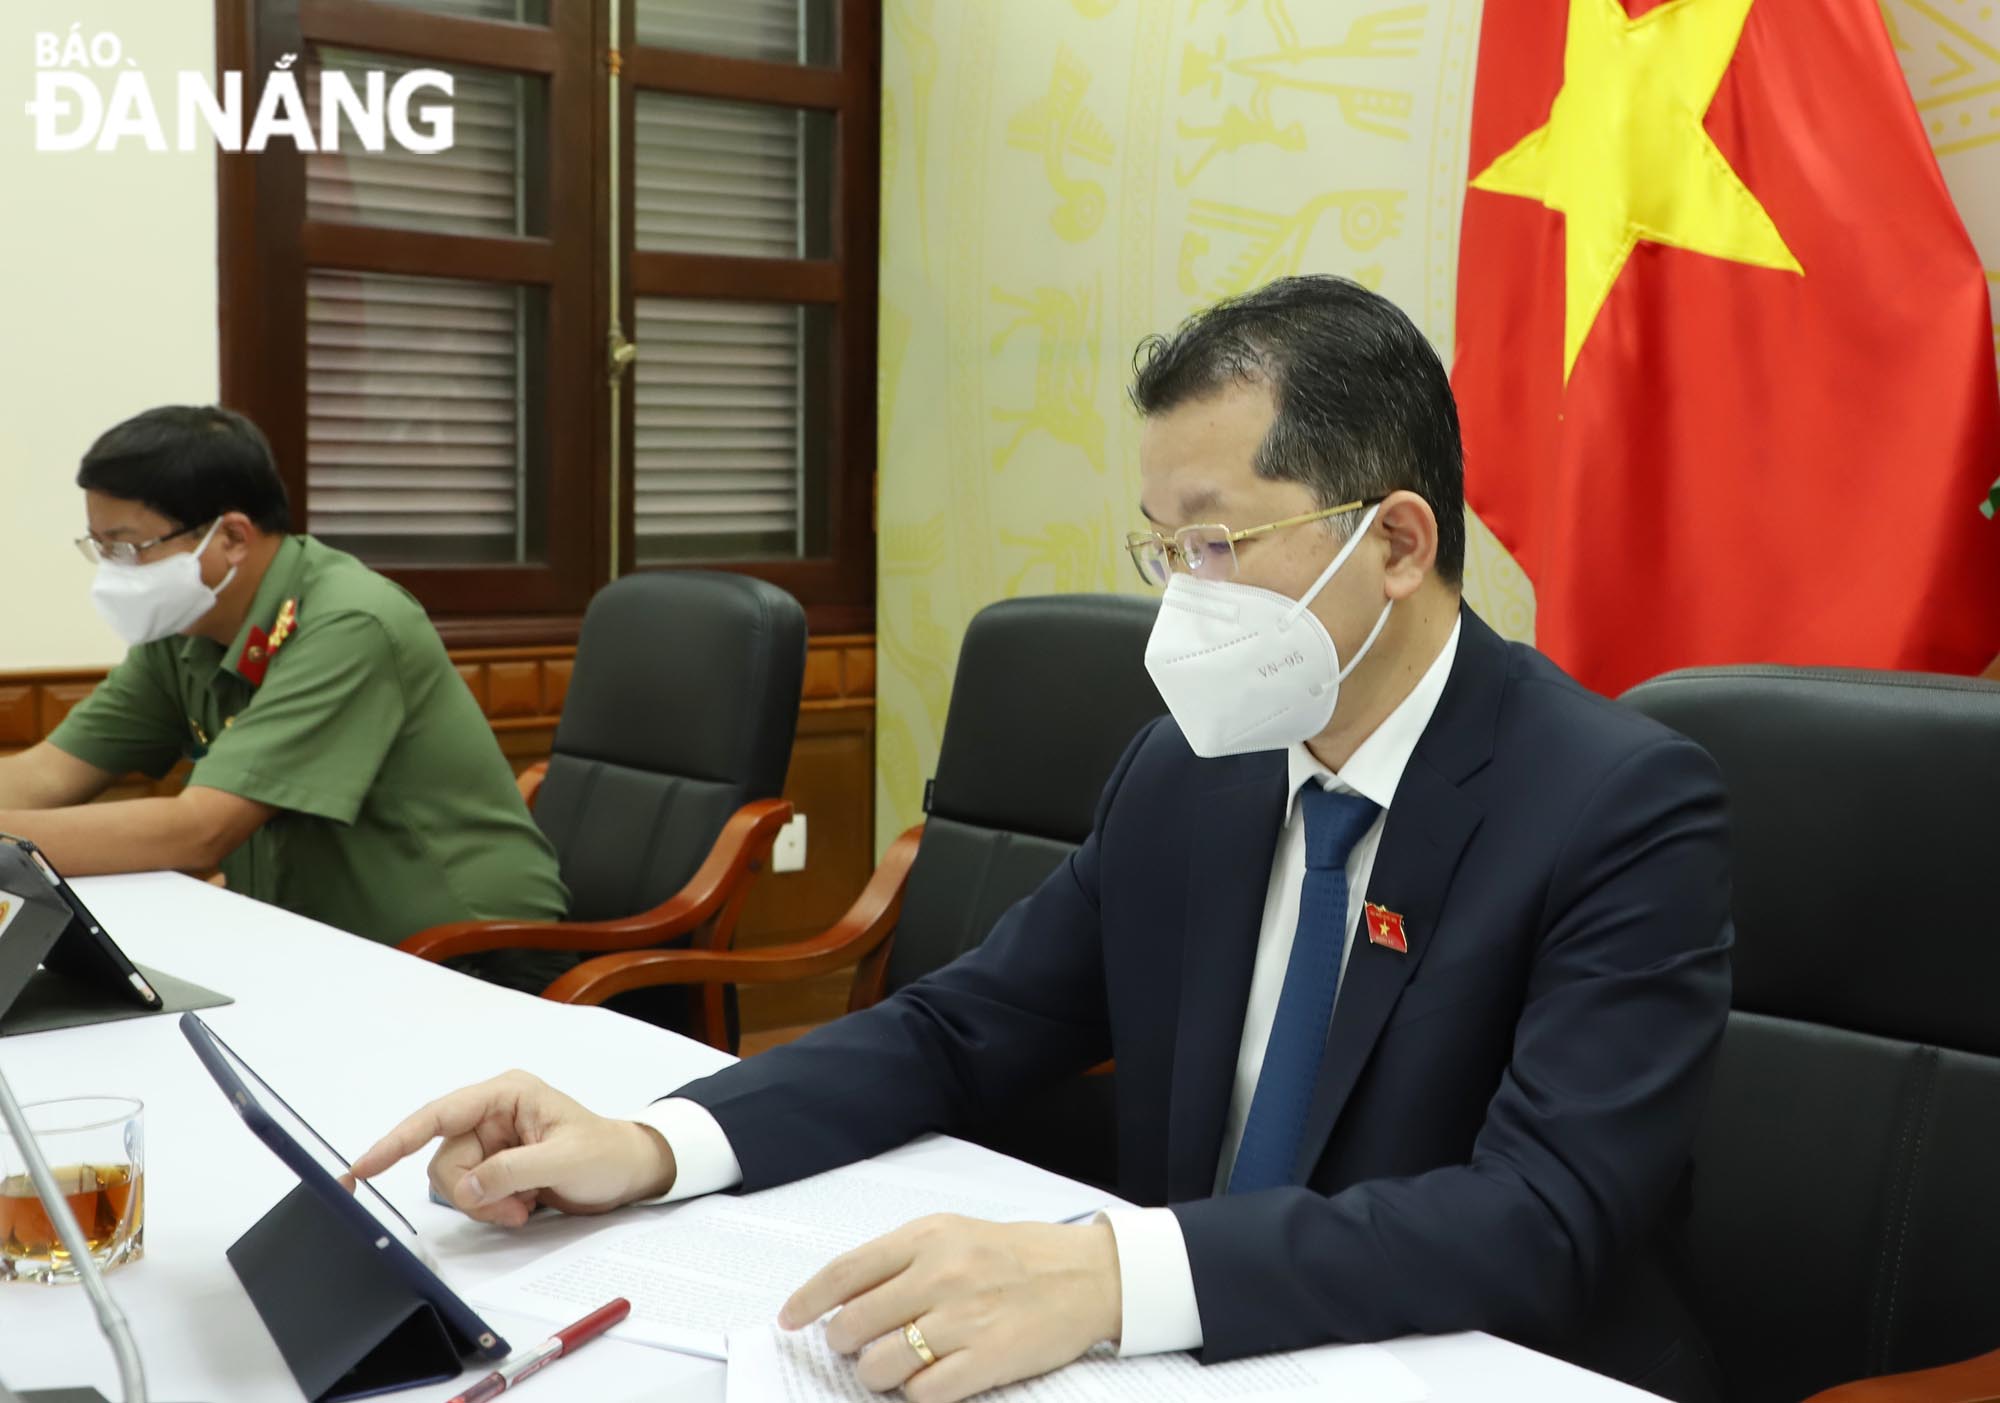 Bí thư Thành ủy Nguyễn Văn Quảng biểu quyết thông qua các nghị quyết bằng hình thức trực tuyến. Ảnh: NGỌC PHÚ